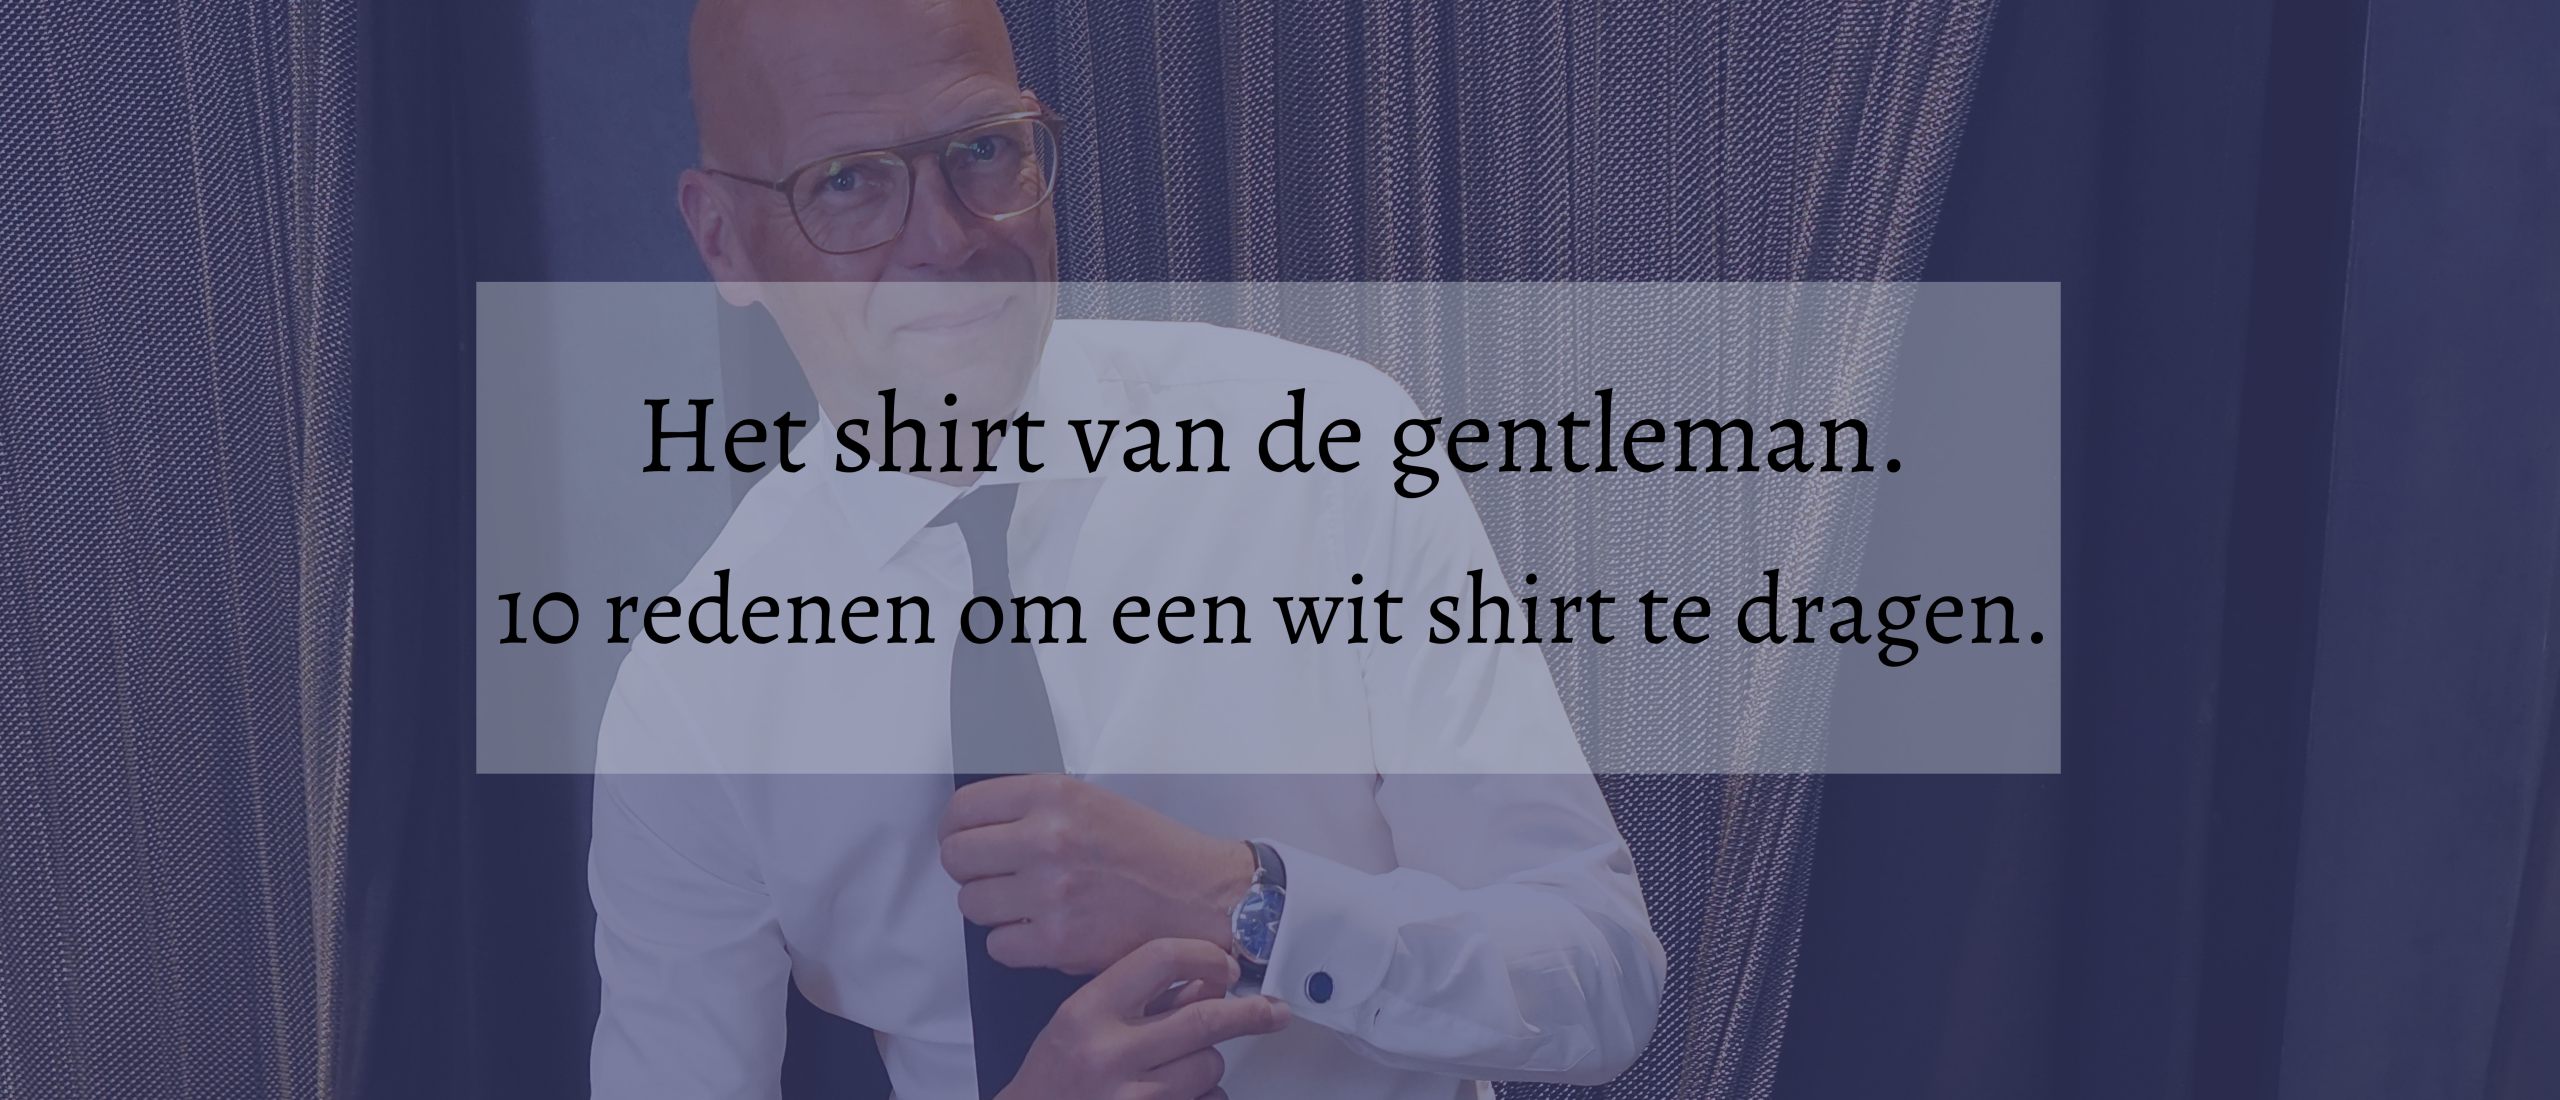 Het shirt van de gentleman. 10 redenen om een wit shirt te dragen.